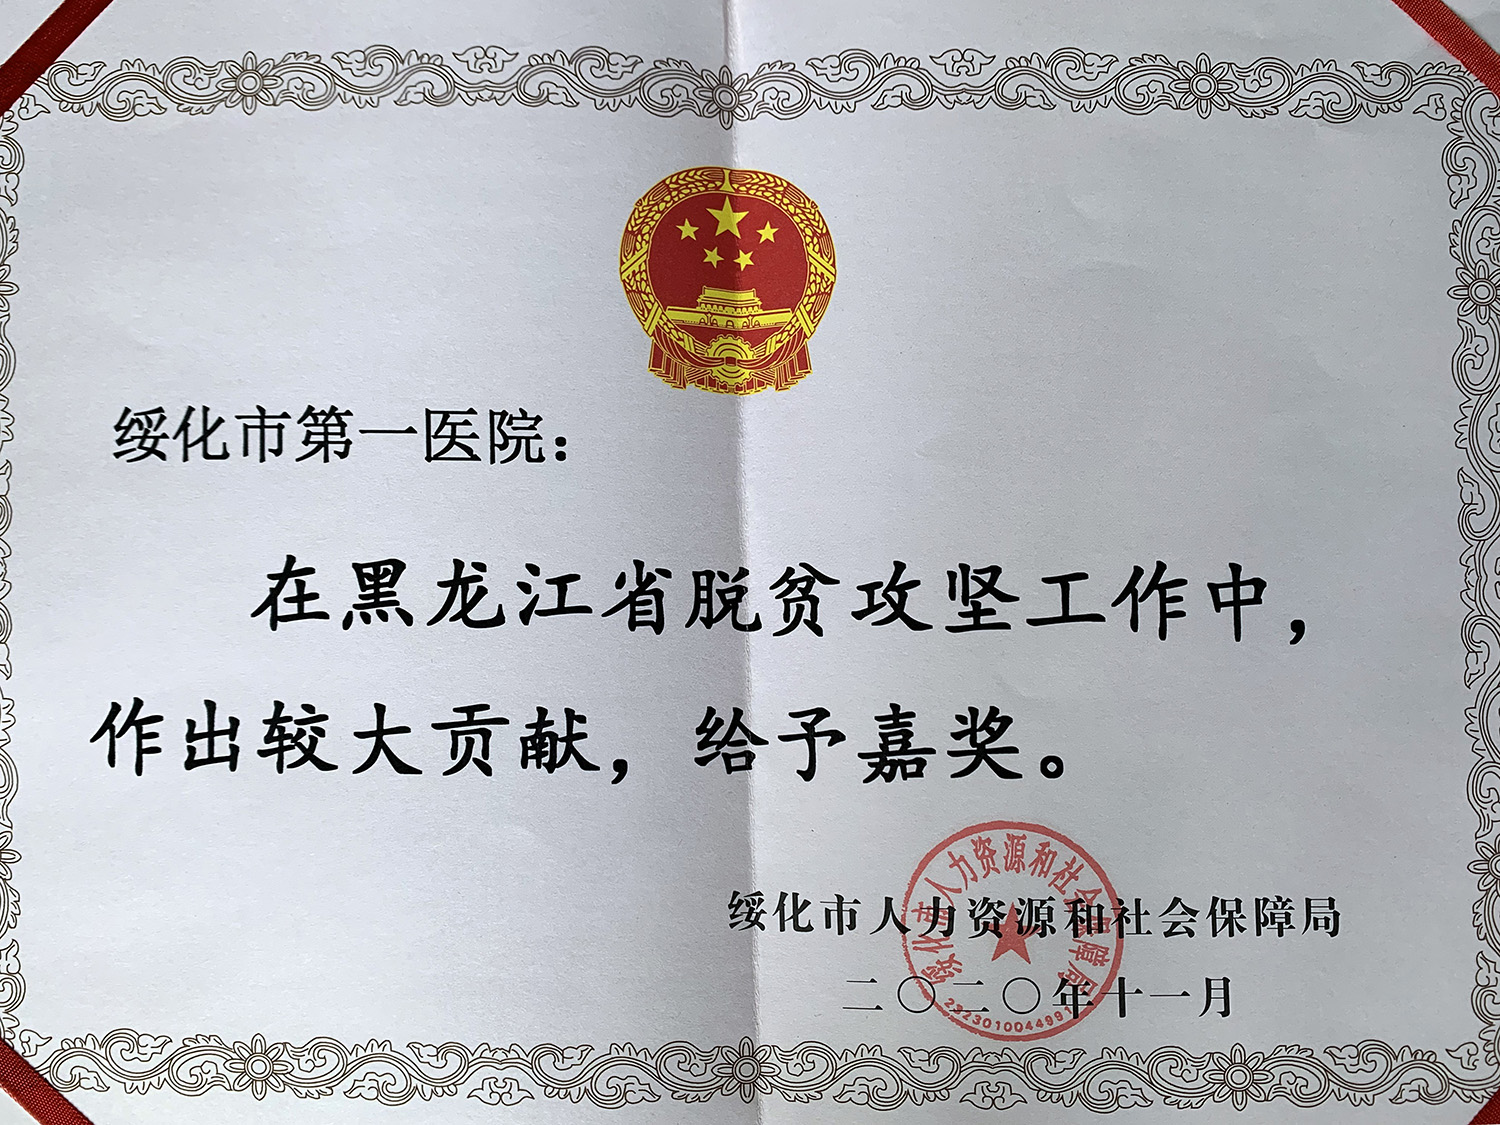 2020年10月韦德体育官网获得绥化市人力资源和社会保障局颁发的“黑龙江省事业单位脱贫攻坚工作奖励副本